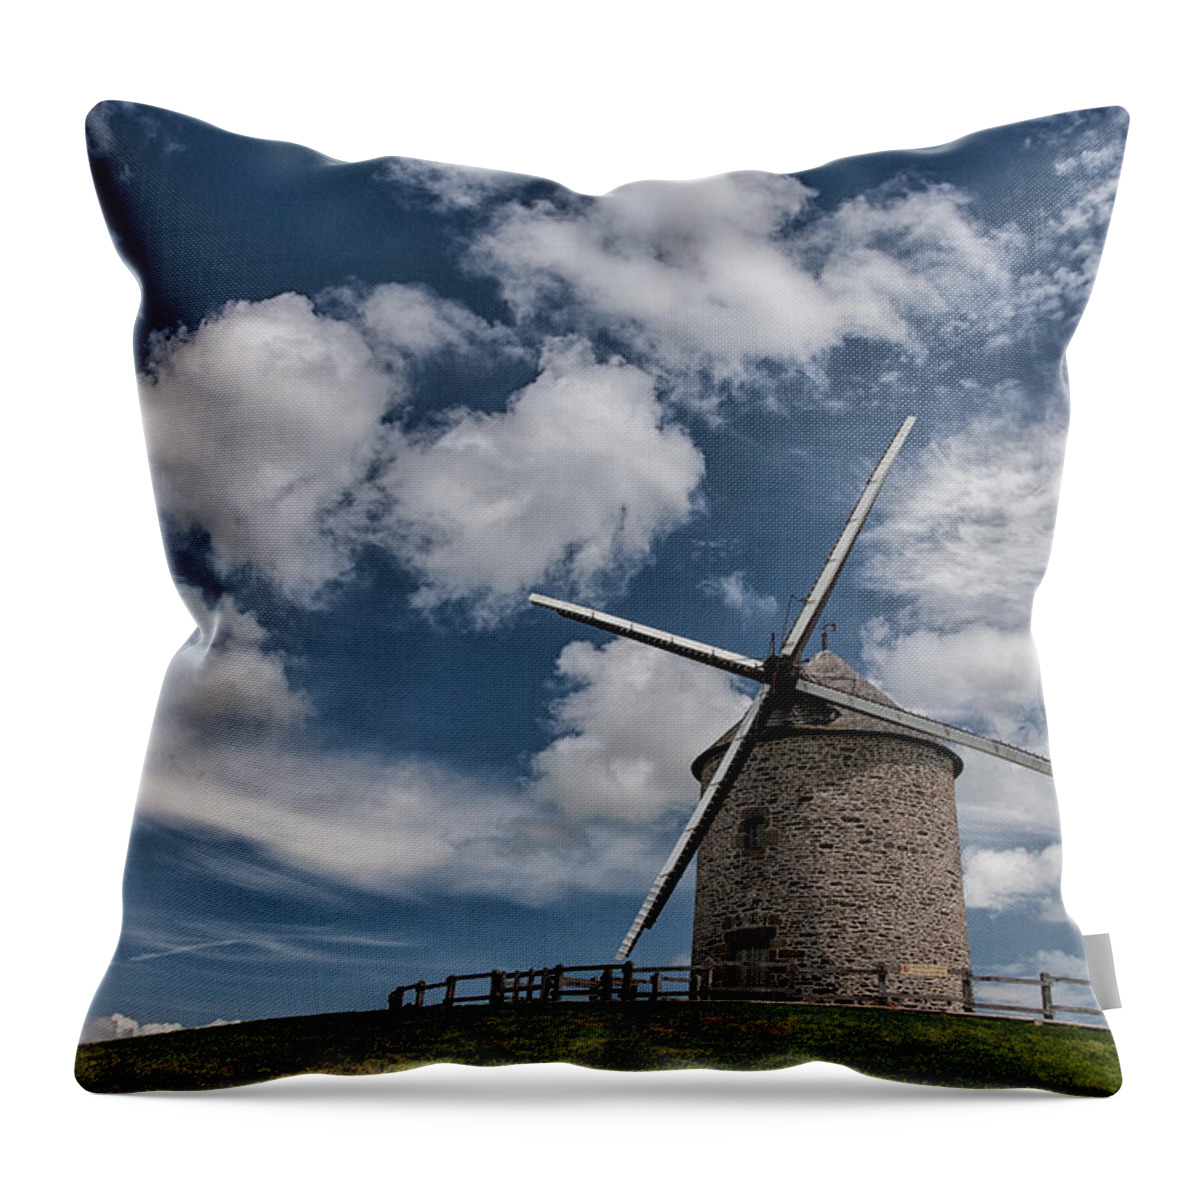 Moulin De Moidrey Throw Pillow featuring the photograph Moulin de Moidrey by Nigel R Bell